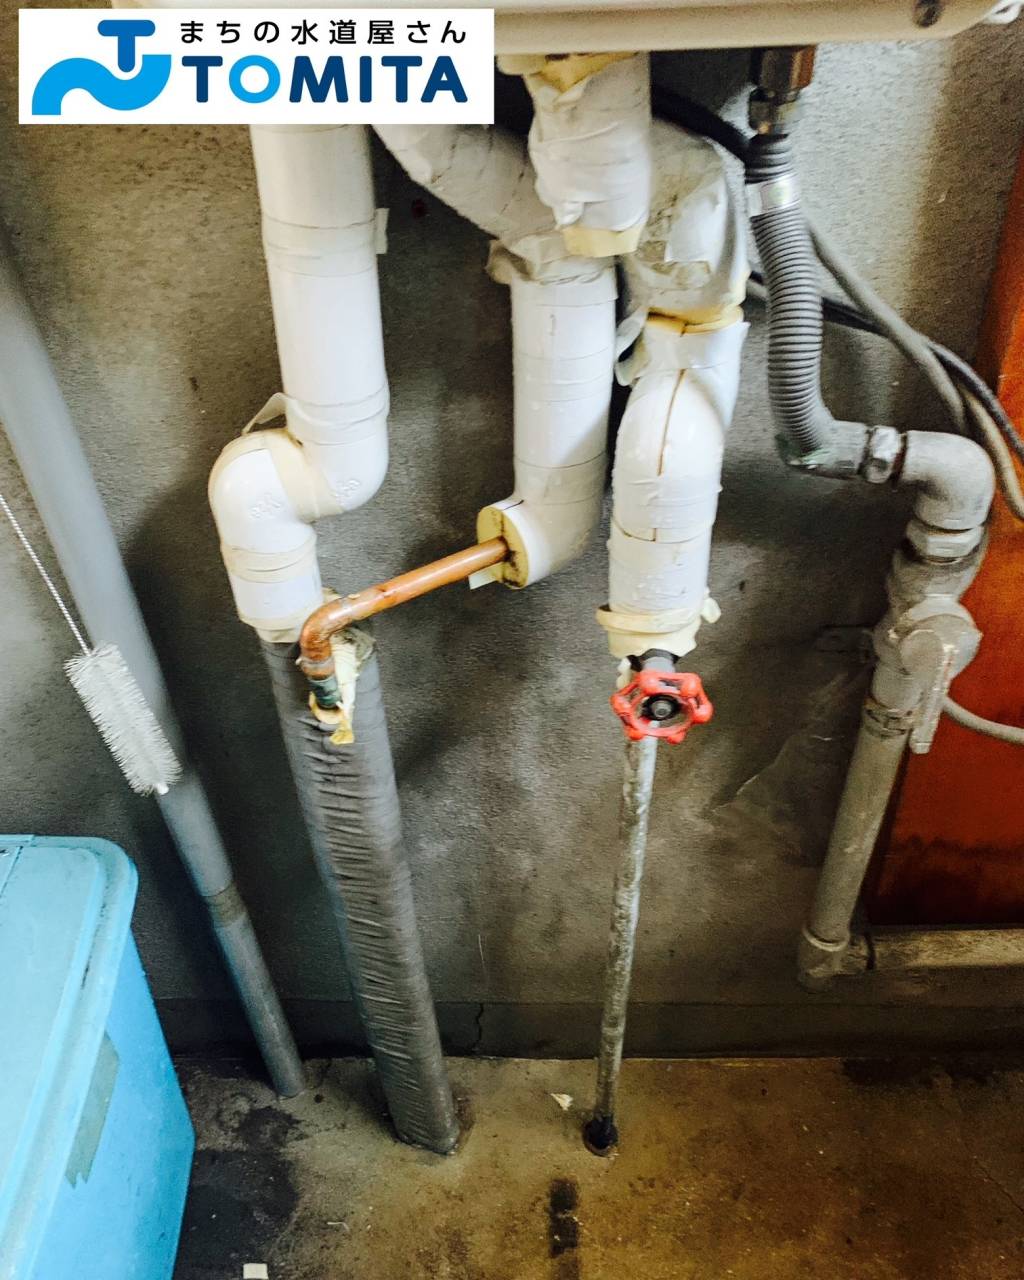 【施工前】保温材を撤去しながら、漏水部分の配管状況を確認します。既存の配管は穴の開きやすい銅管でした。